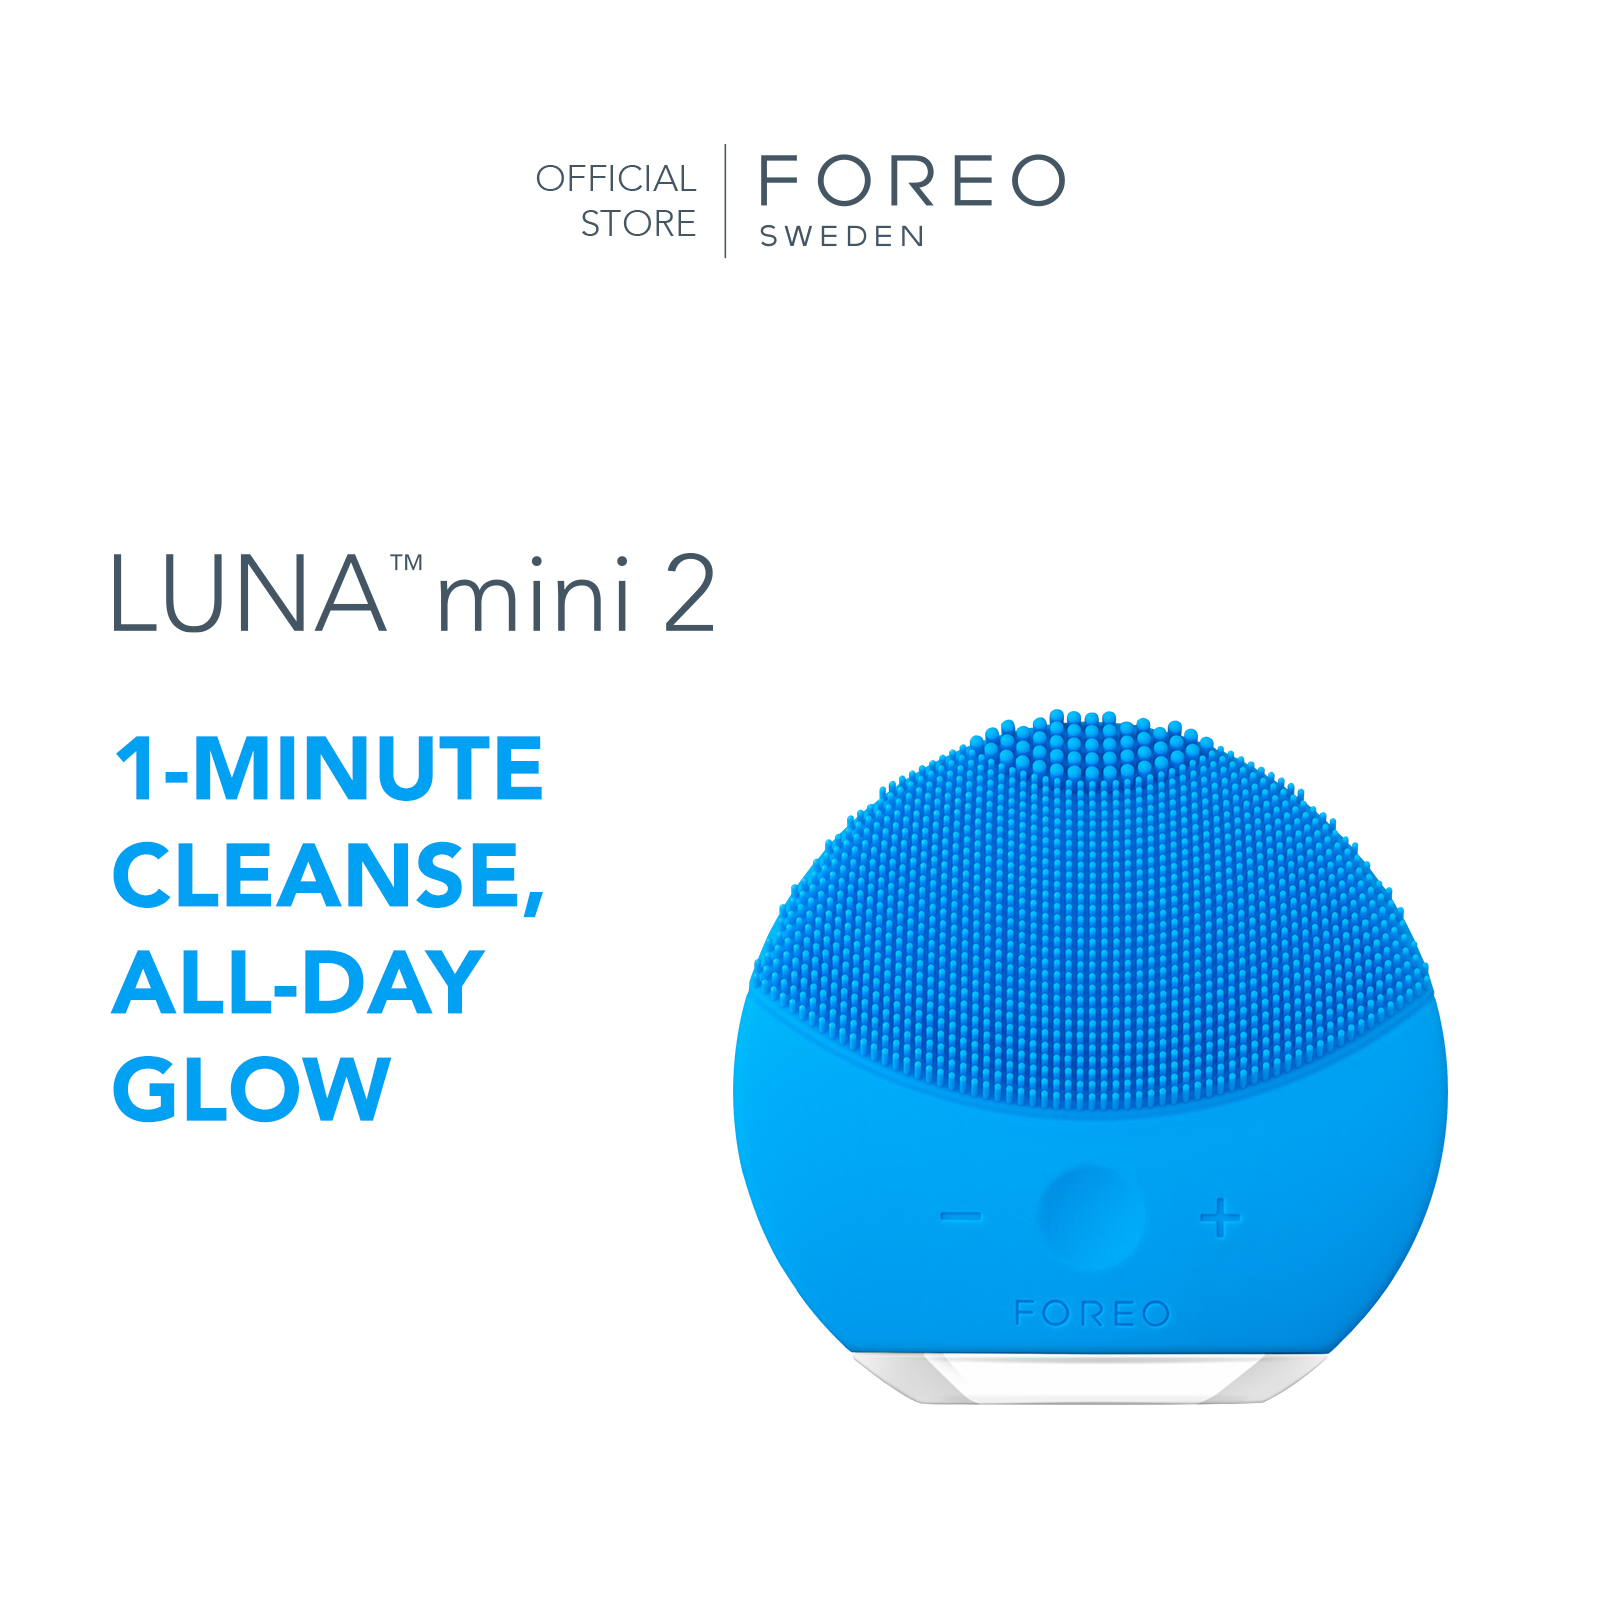 Máy rửa mặt FOREO LUNA MINI 2 làm sạch sâu dành cho mọi loại da có thể sạc thời gian sử dụng đến 300 lần cho một lần sạc bảo hành 2 năm - intl